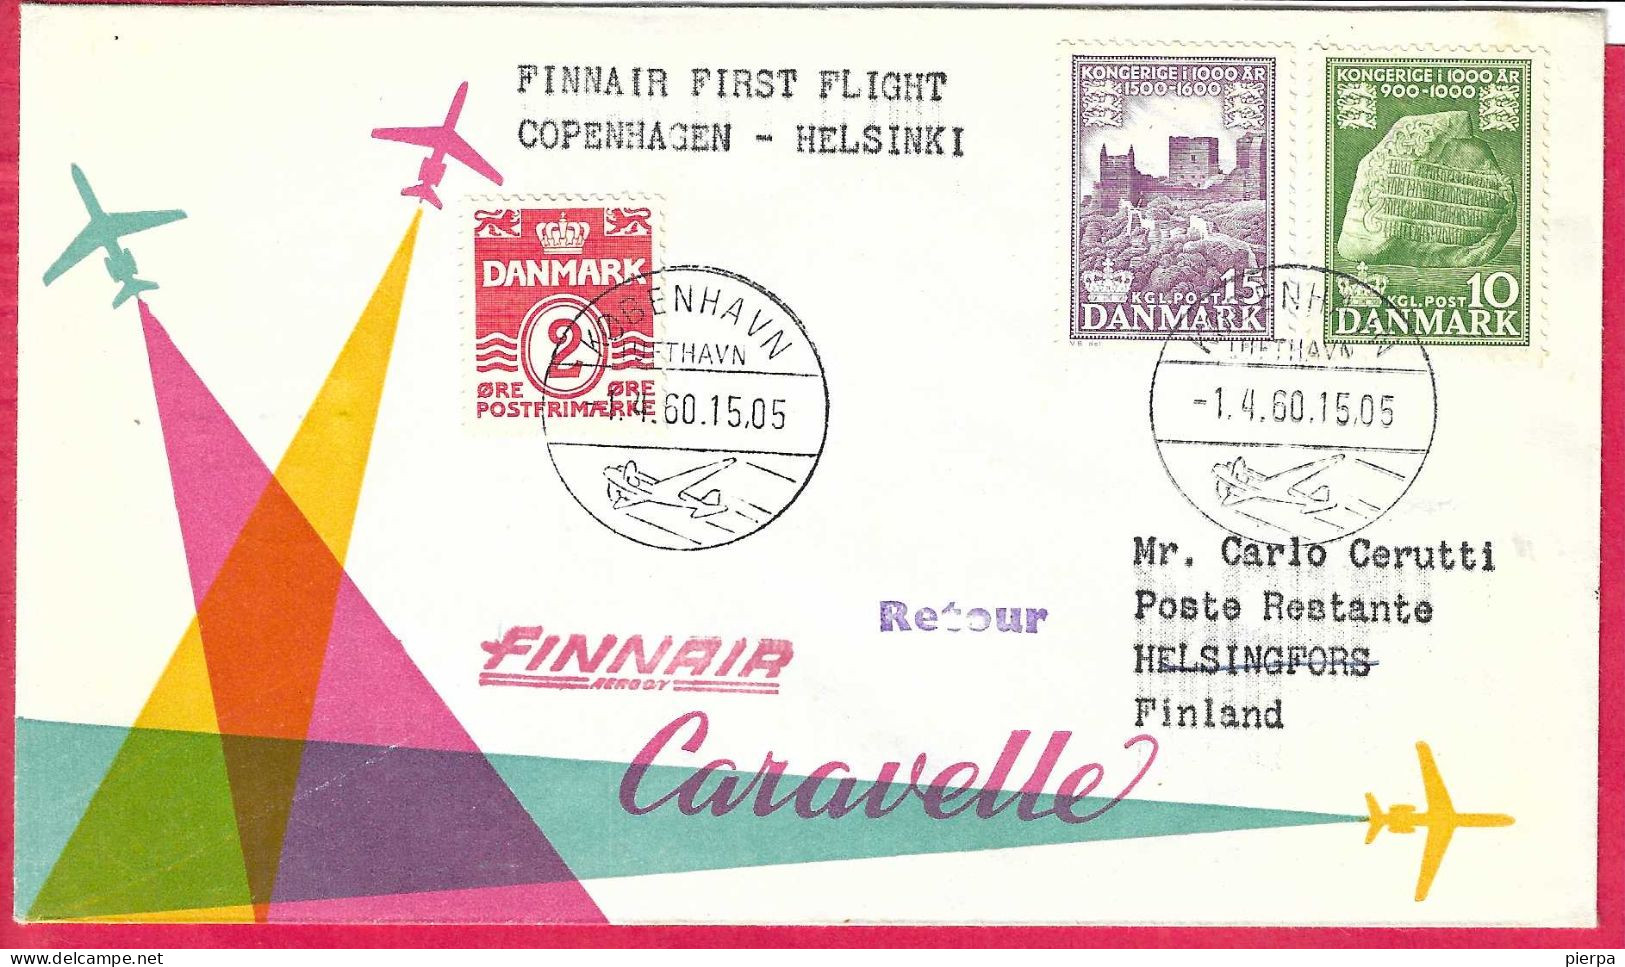 DANMARK - FIRST CARAVELLE FLIGHT - FINNAIR - FROM KOBENHAVN TO HELSINKY *1.4.60* ON OFFICIAL COVER - Luftpost